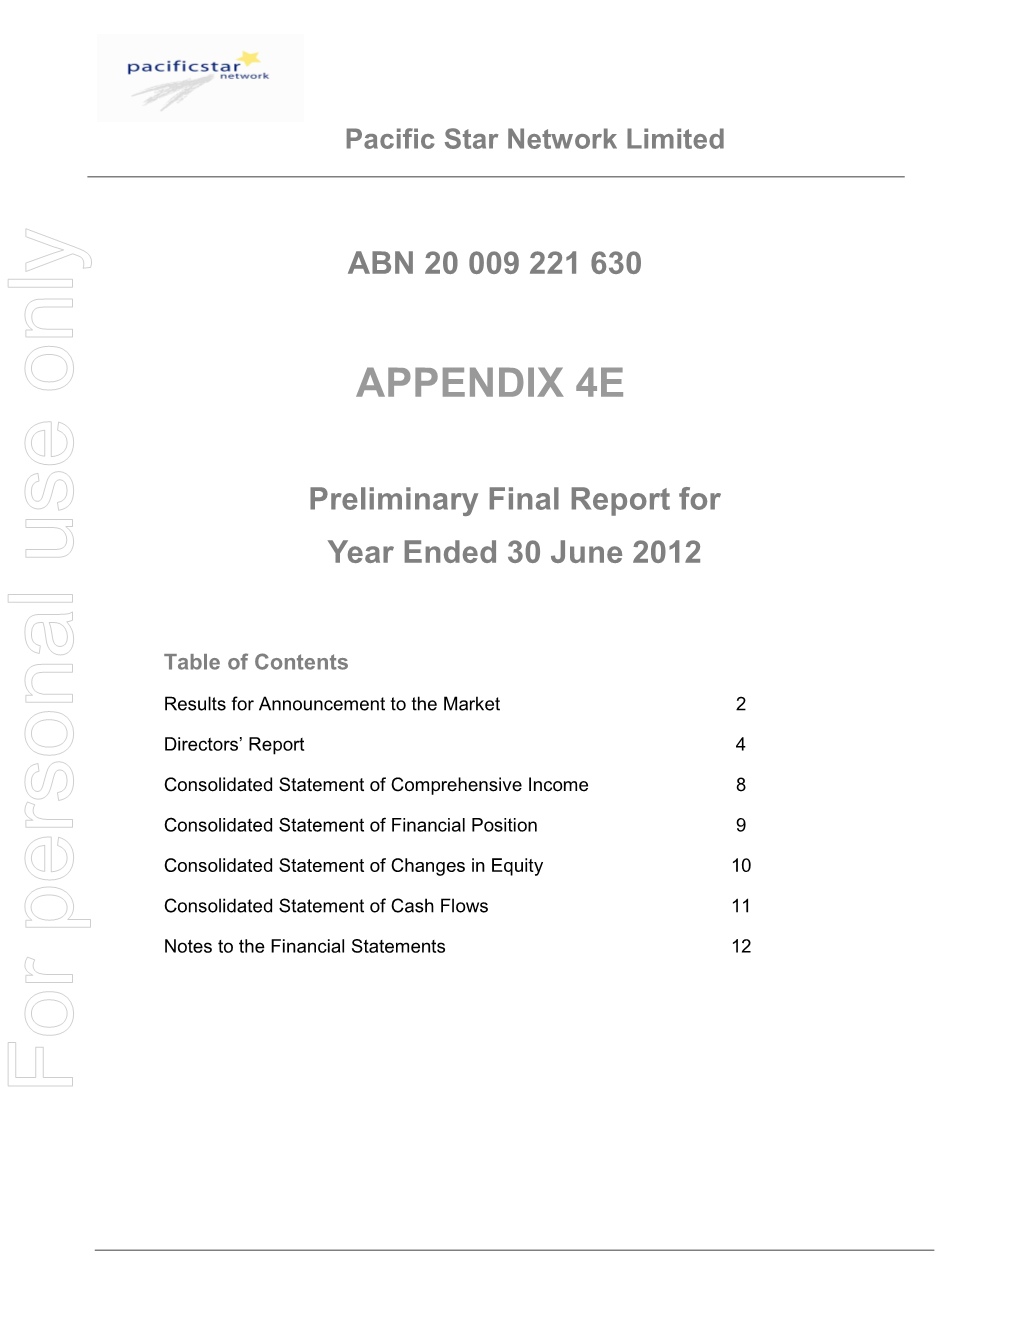 Preliminary Final Report